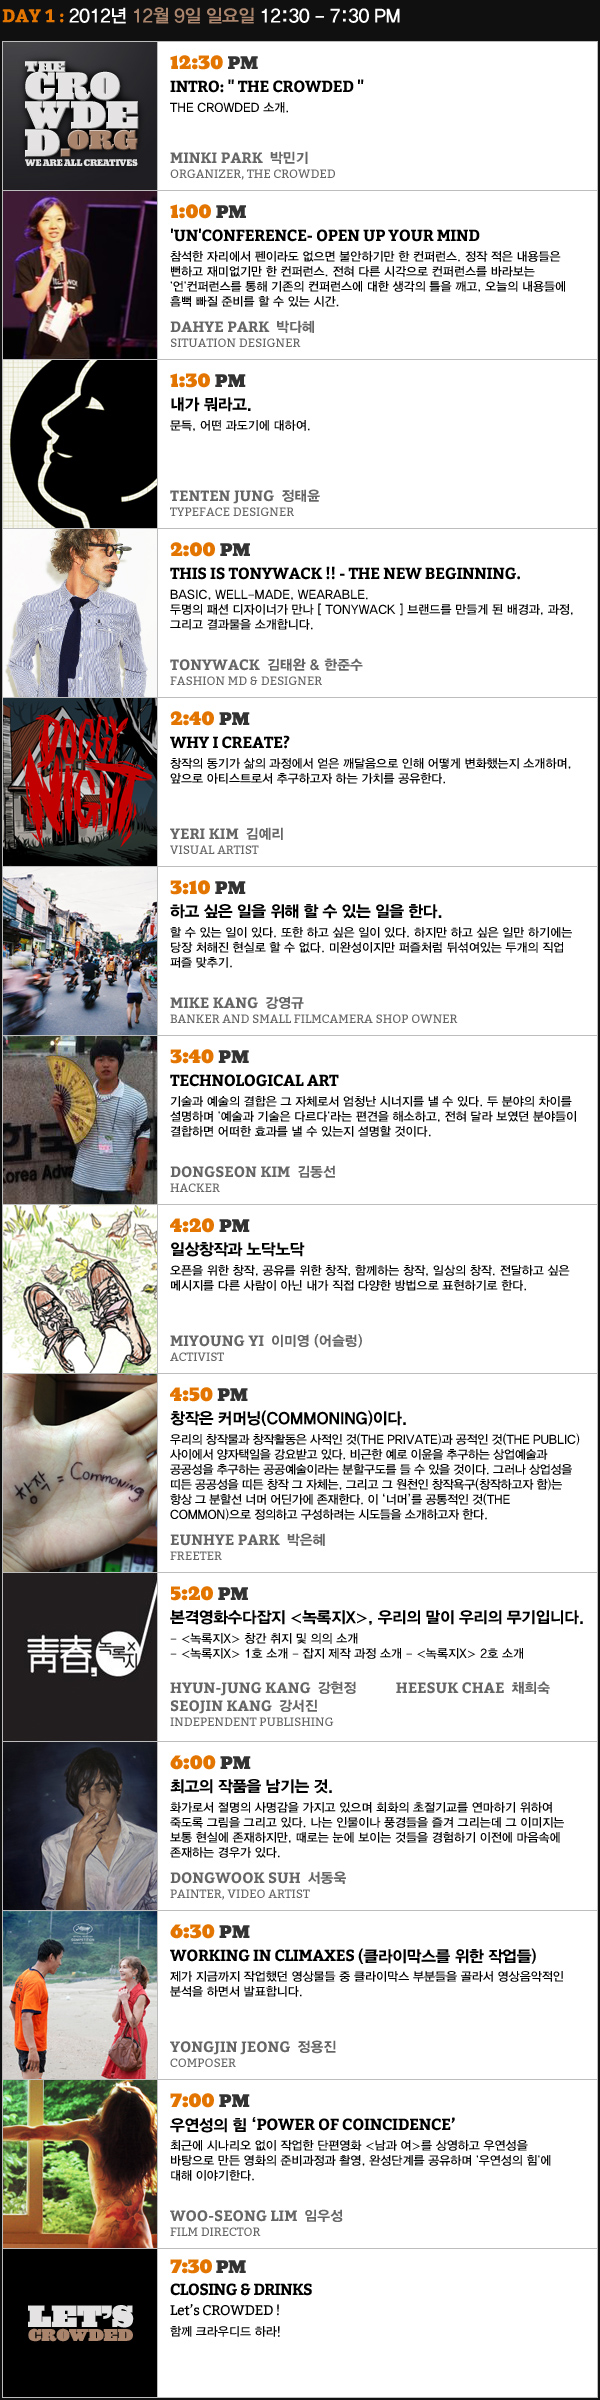 The CCC.SEOUL Schedule 12.9.2012